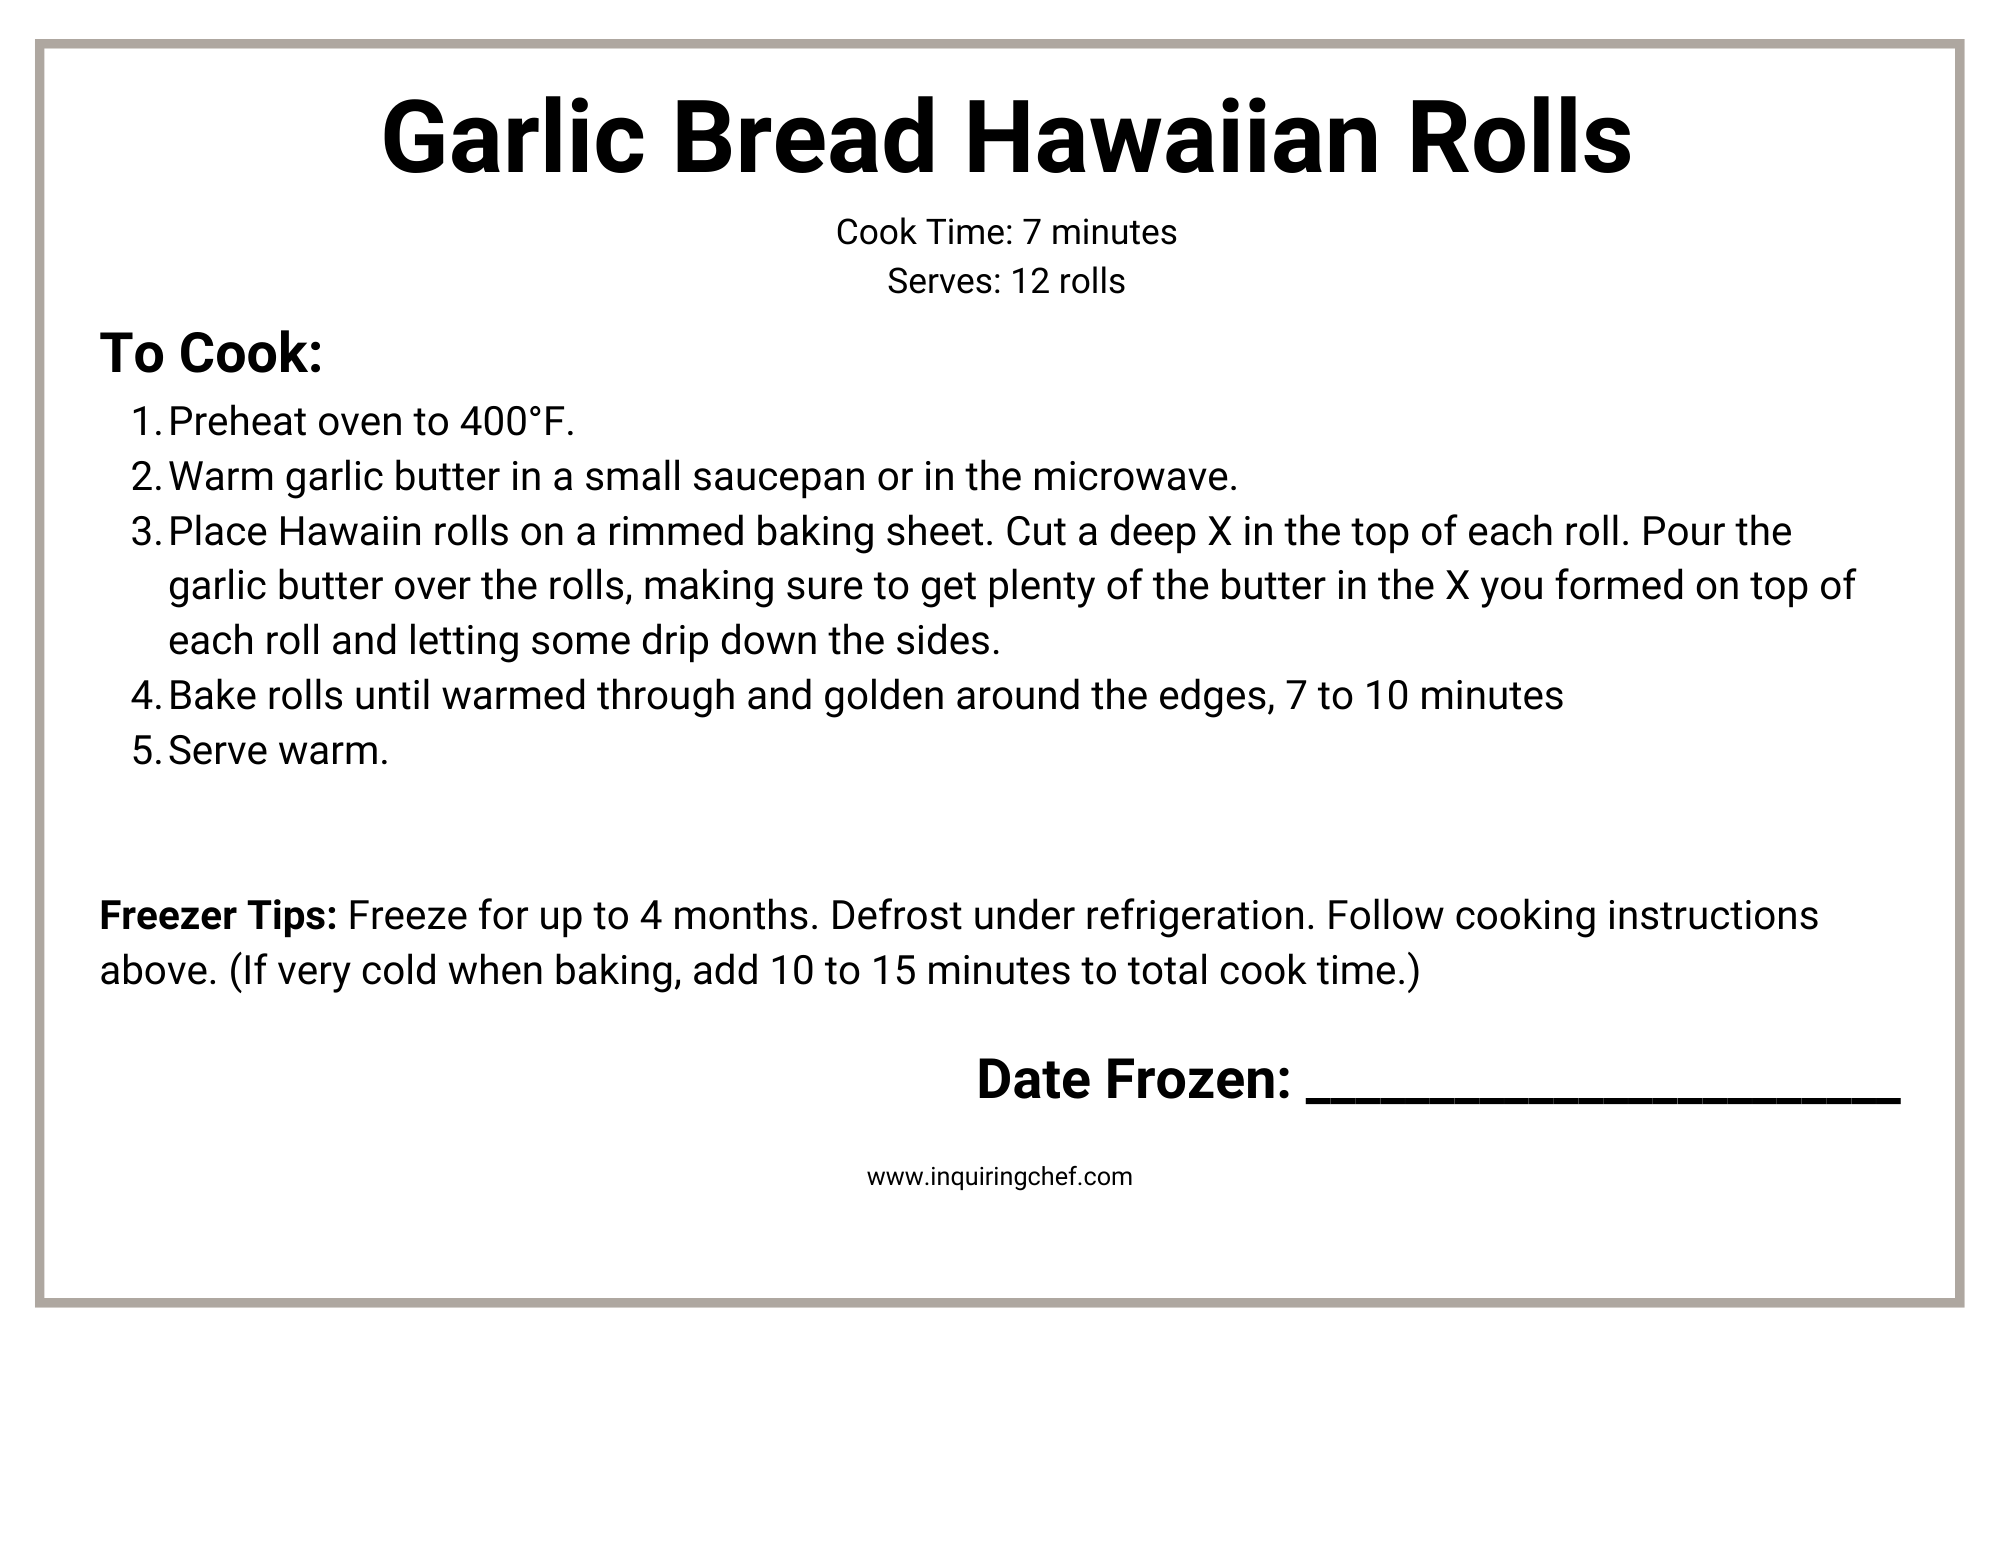 garlic bread hawaiian rolls